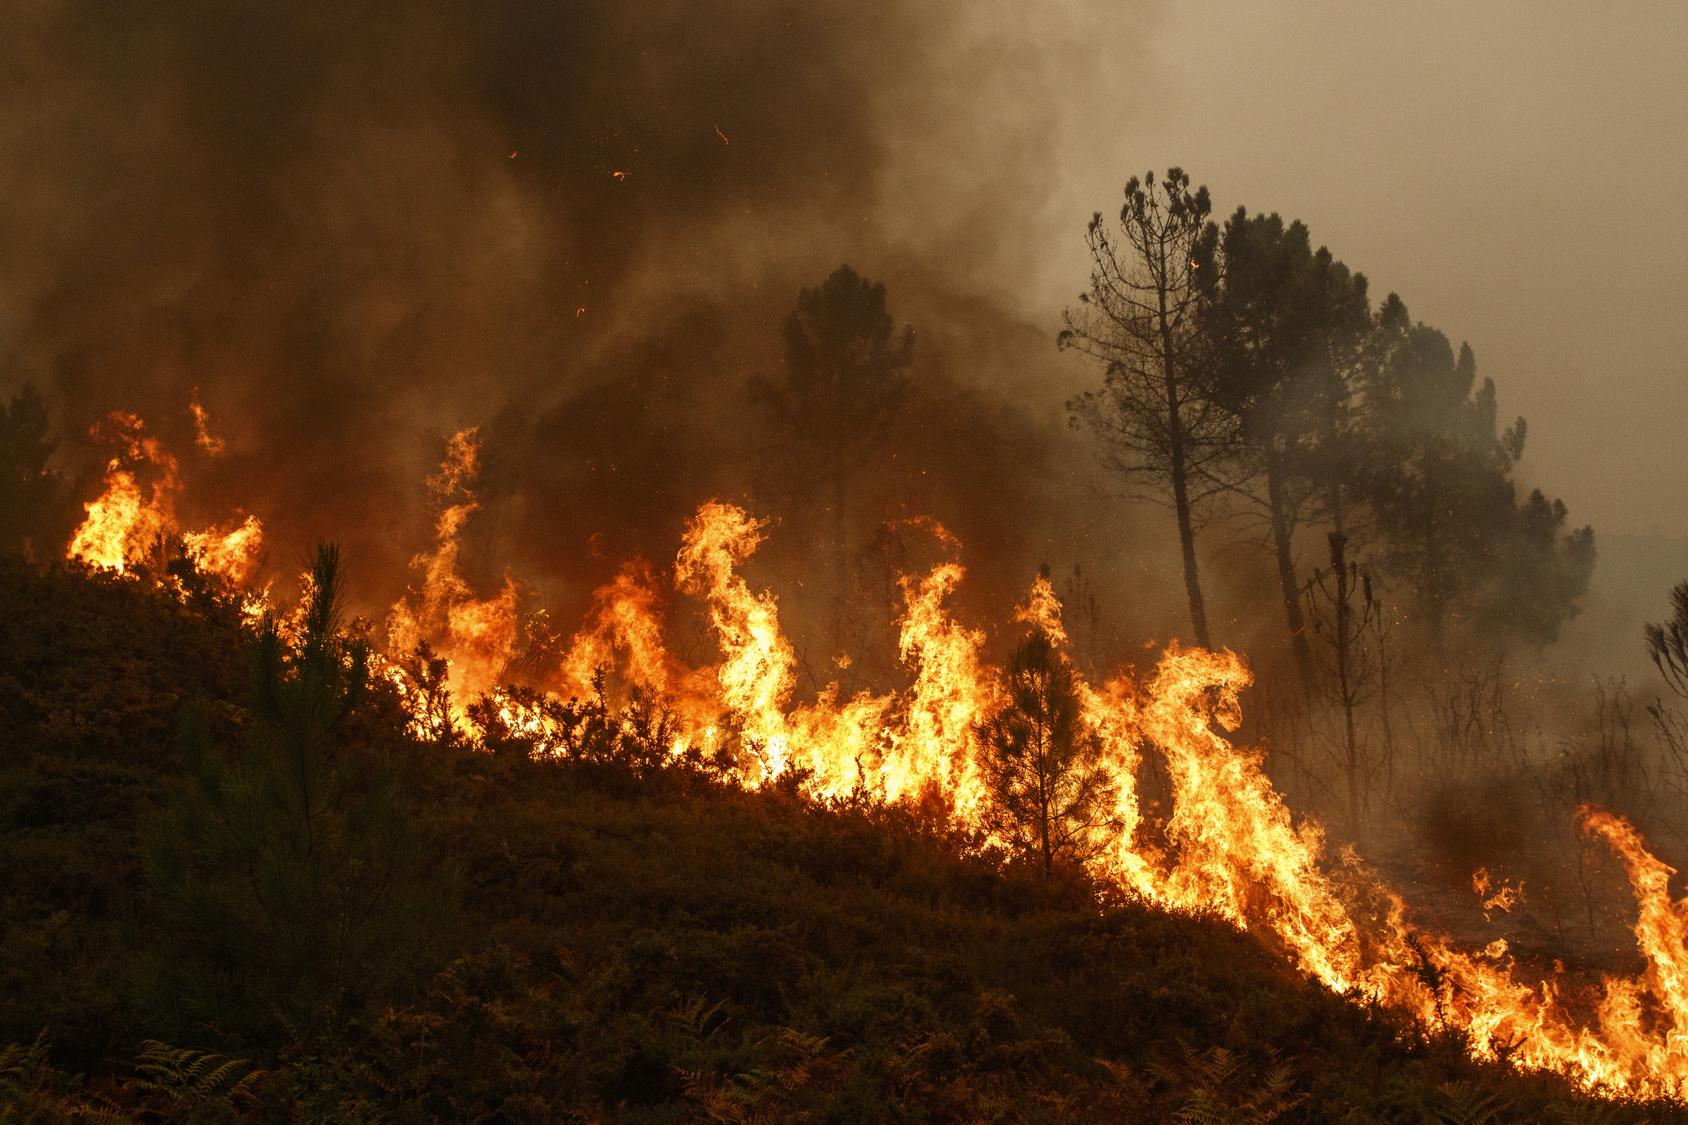 К тушению пожара в горно-лесной местности в Хызы привлечены 2 вертолета